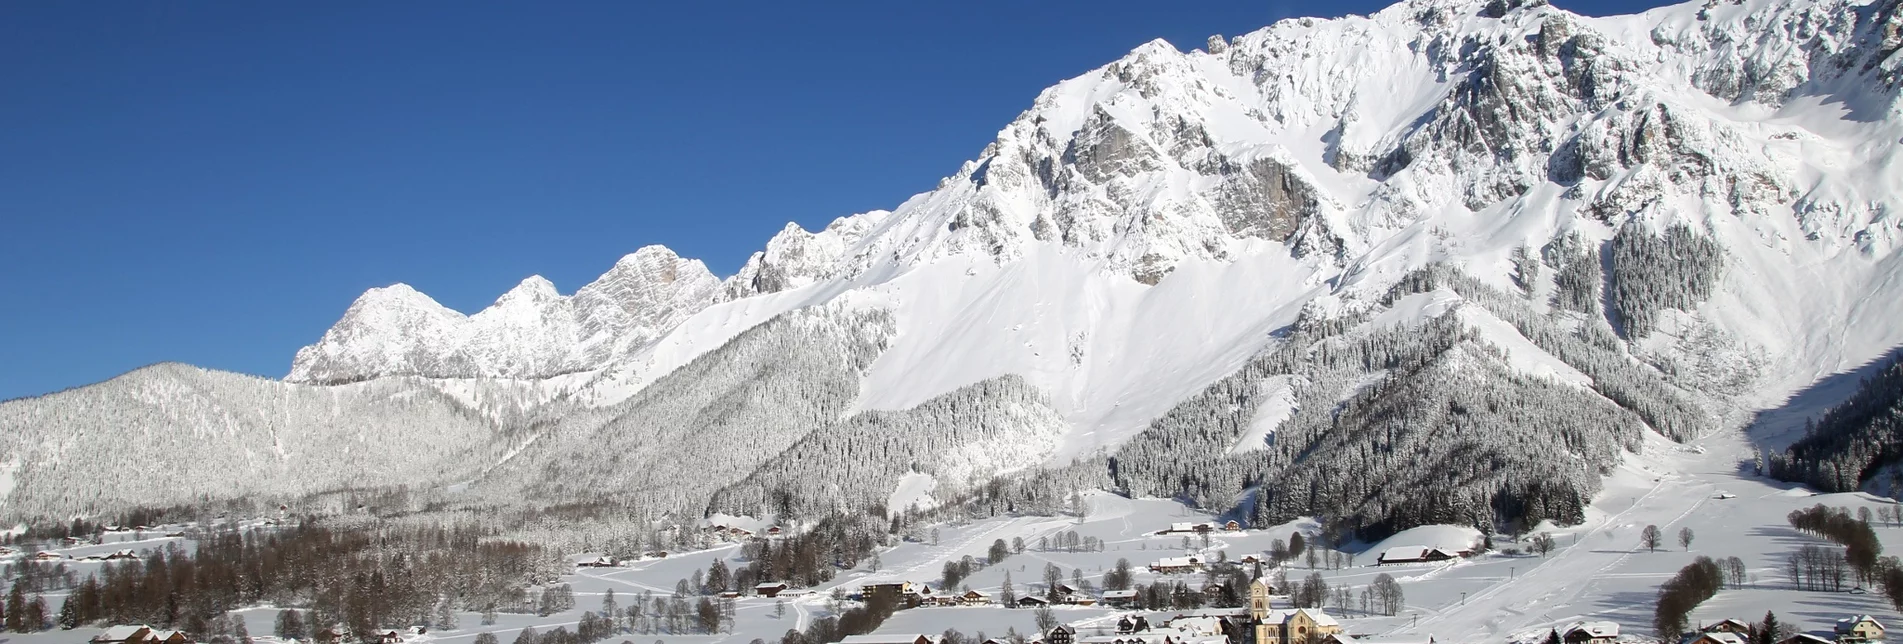 Winterwandern Panoramarunde - Touren-Impression #1 | © Erlebnisregion Schladming-Dachstein